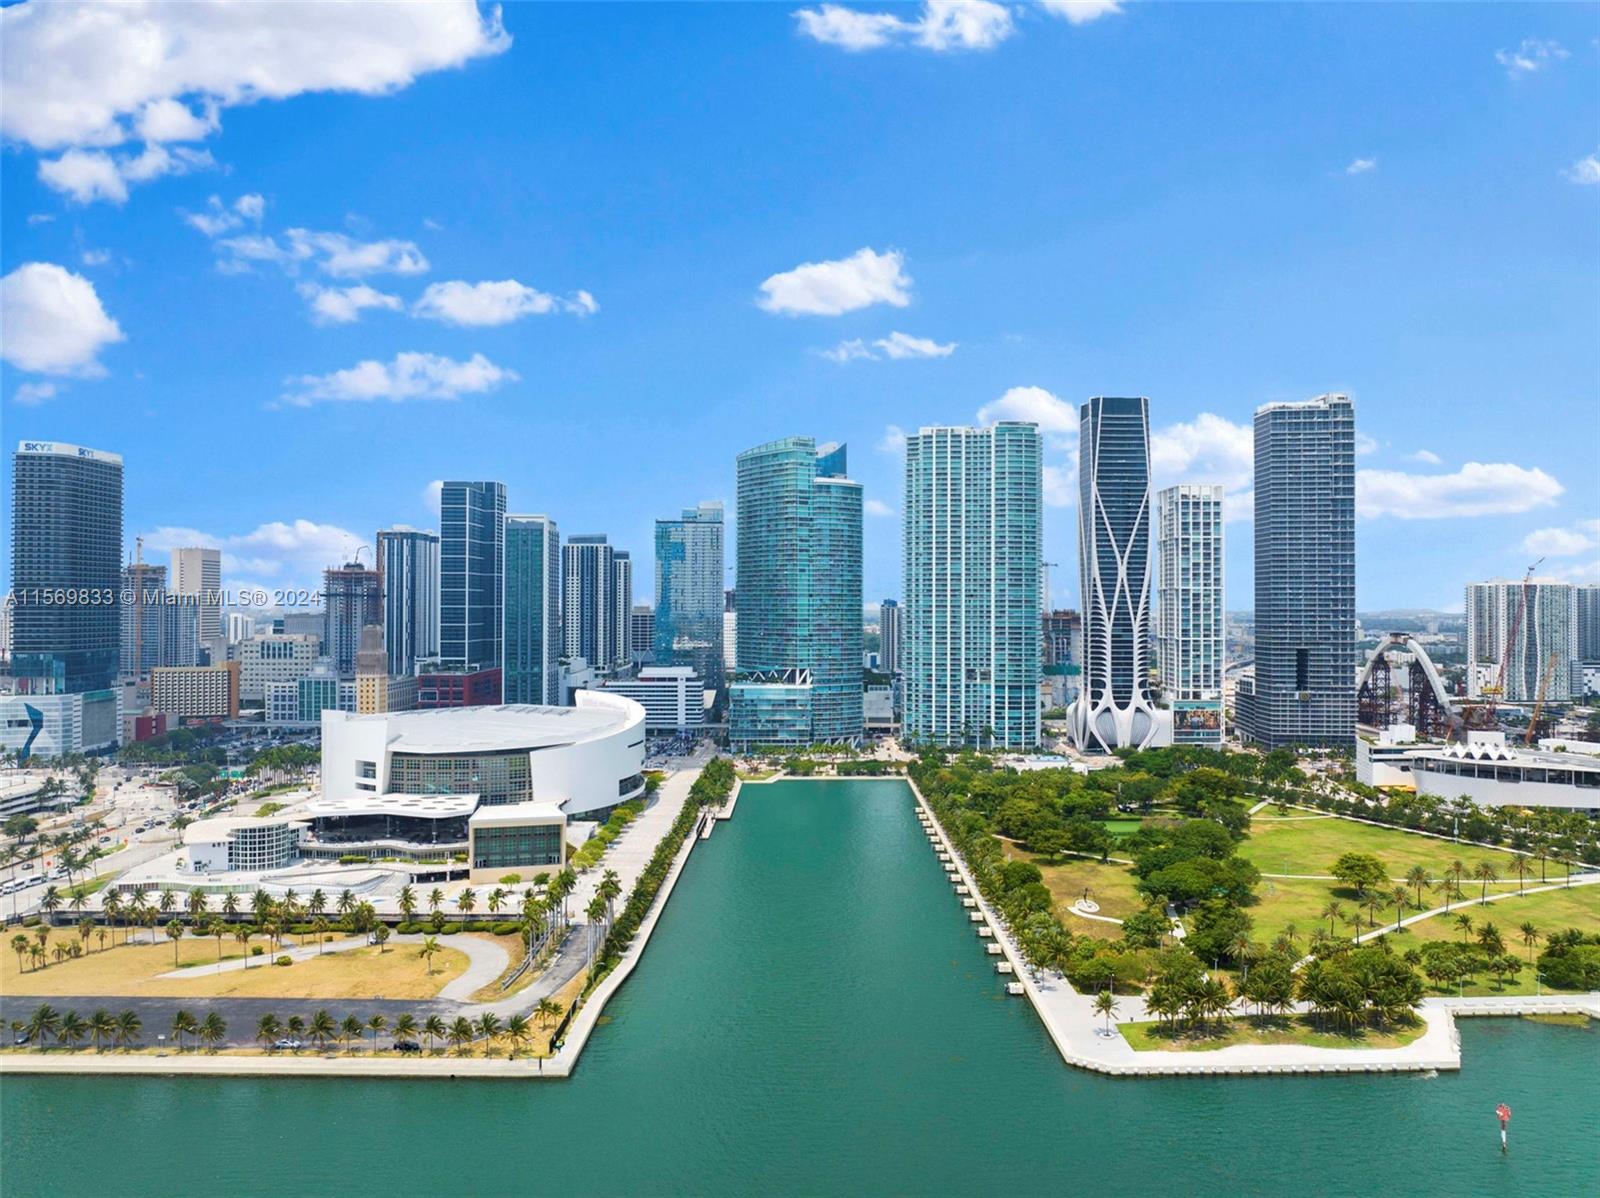 Condo for Rent in Miami, FL